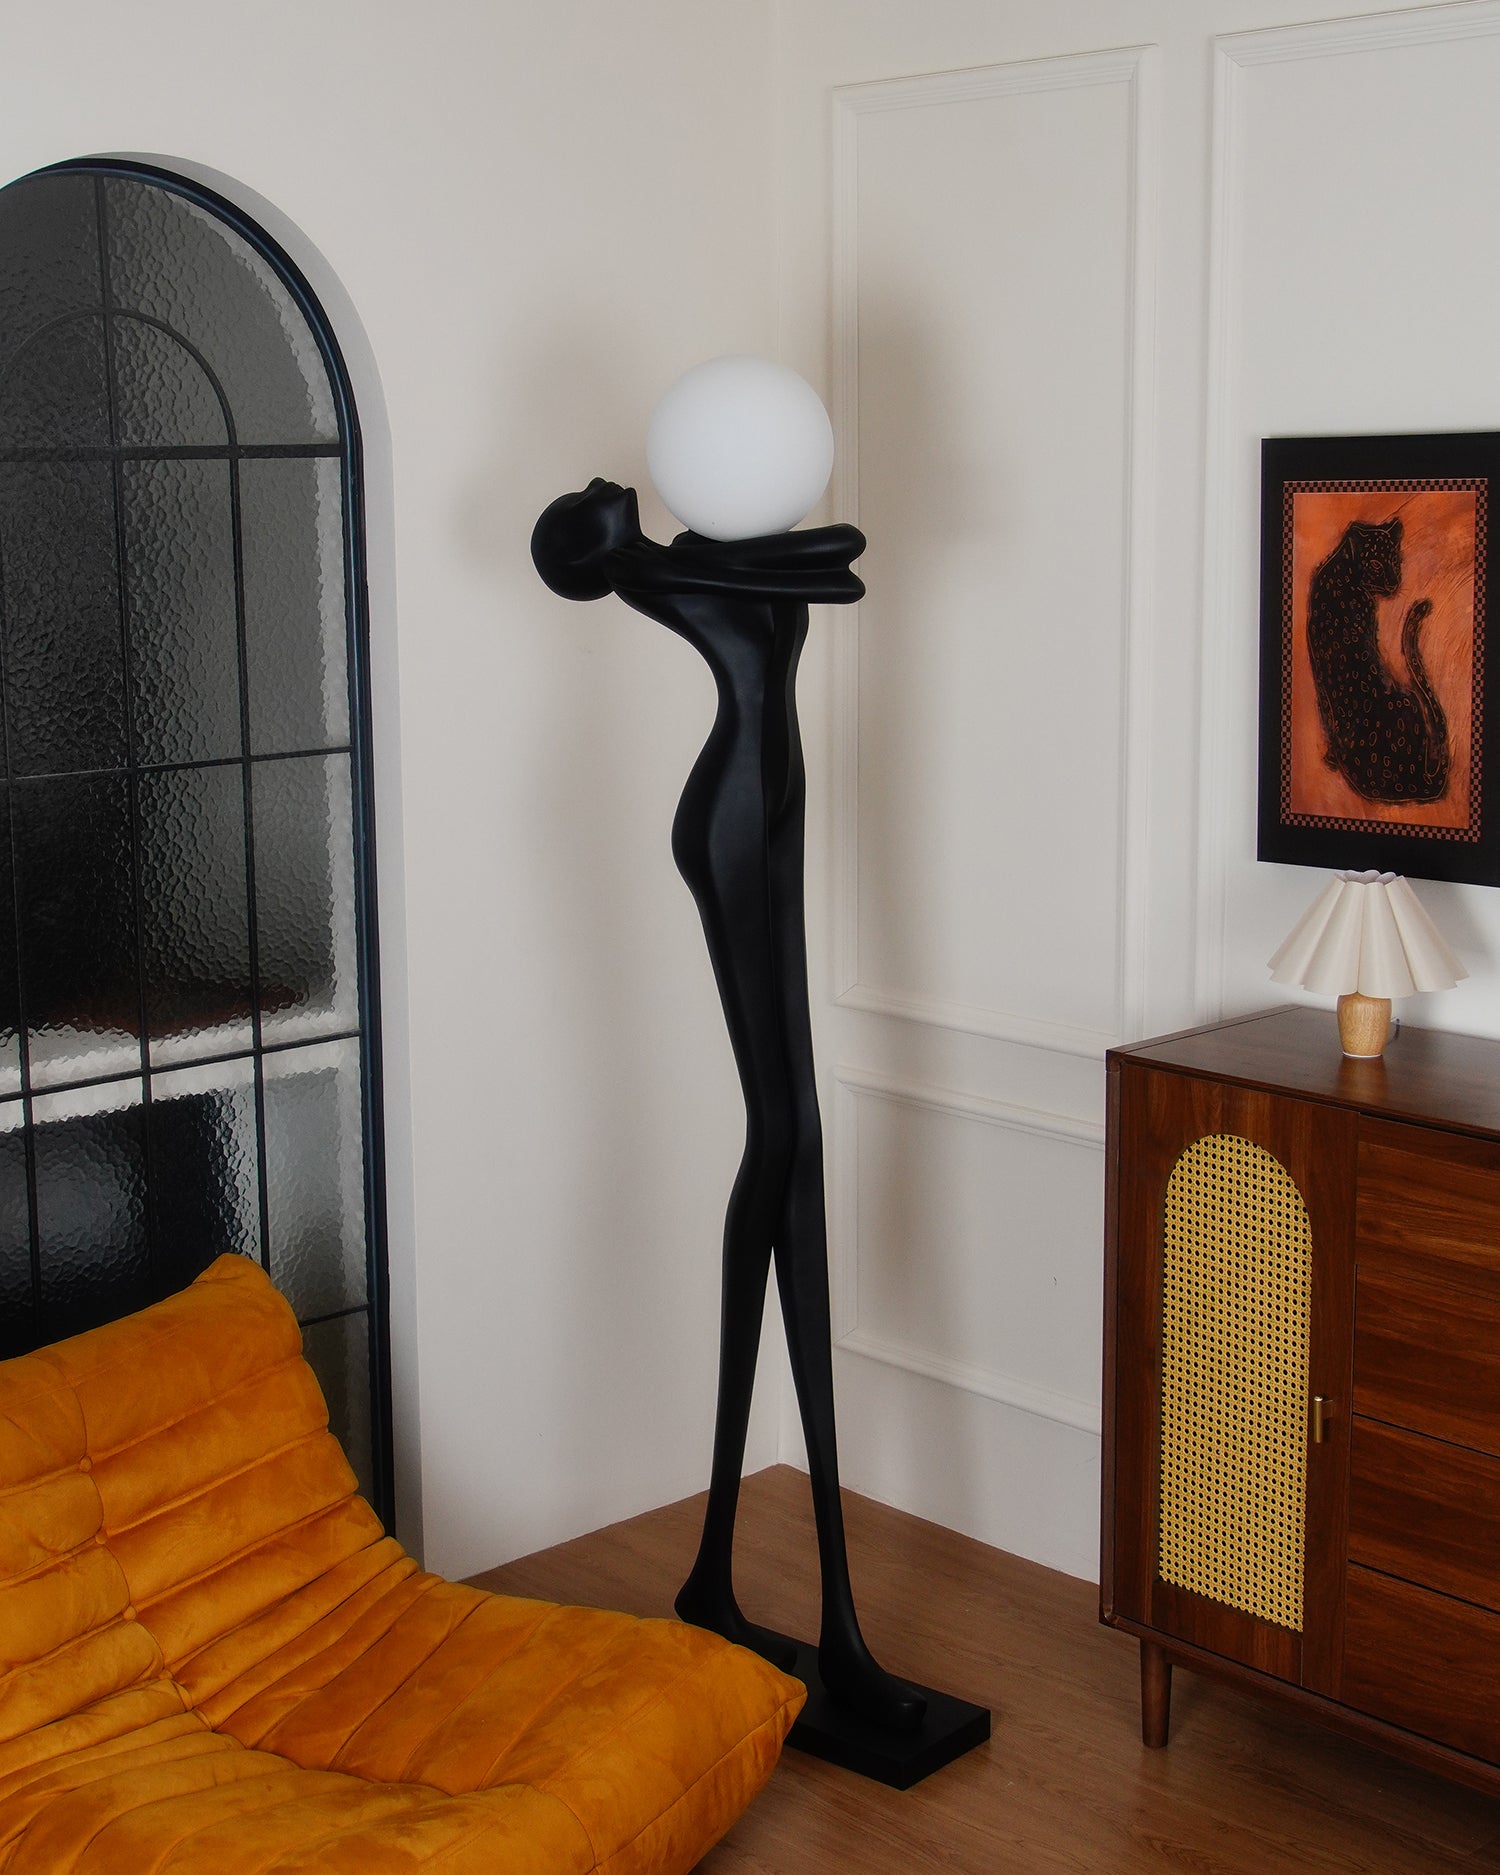 Moca Sculpture Floor Lamp